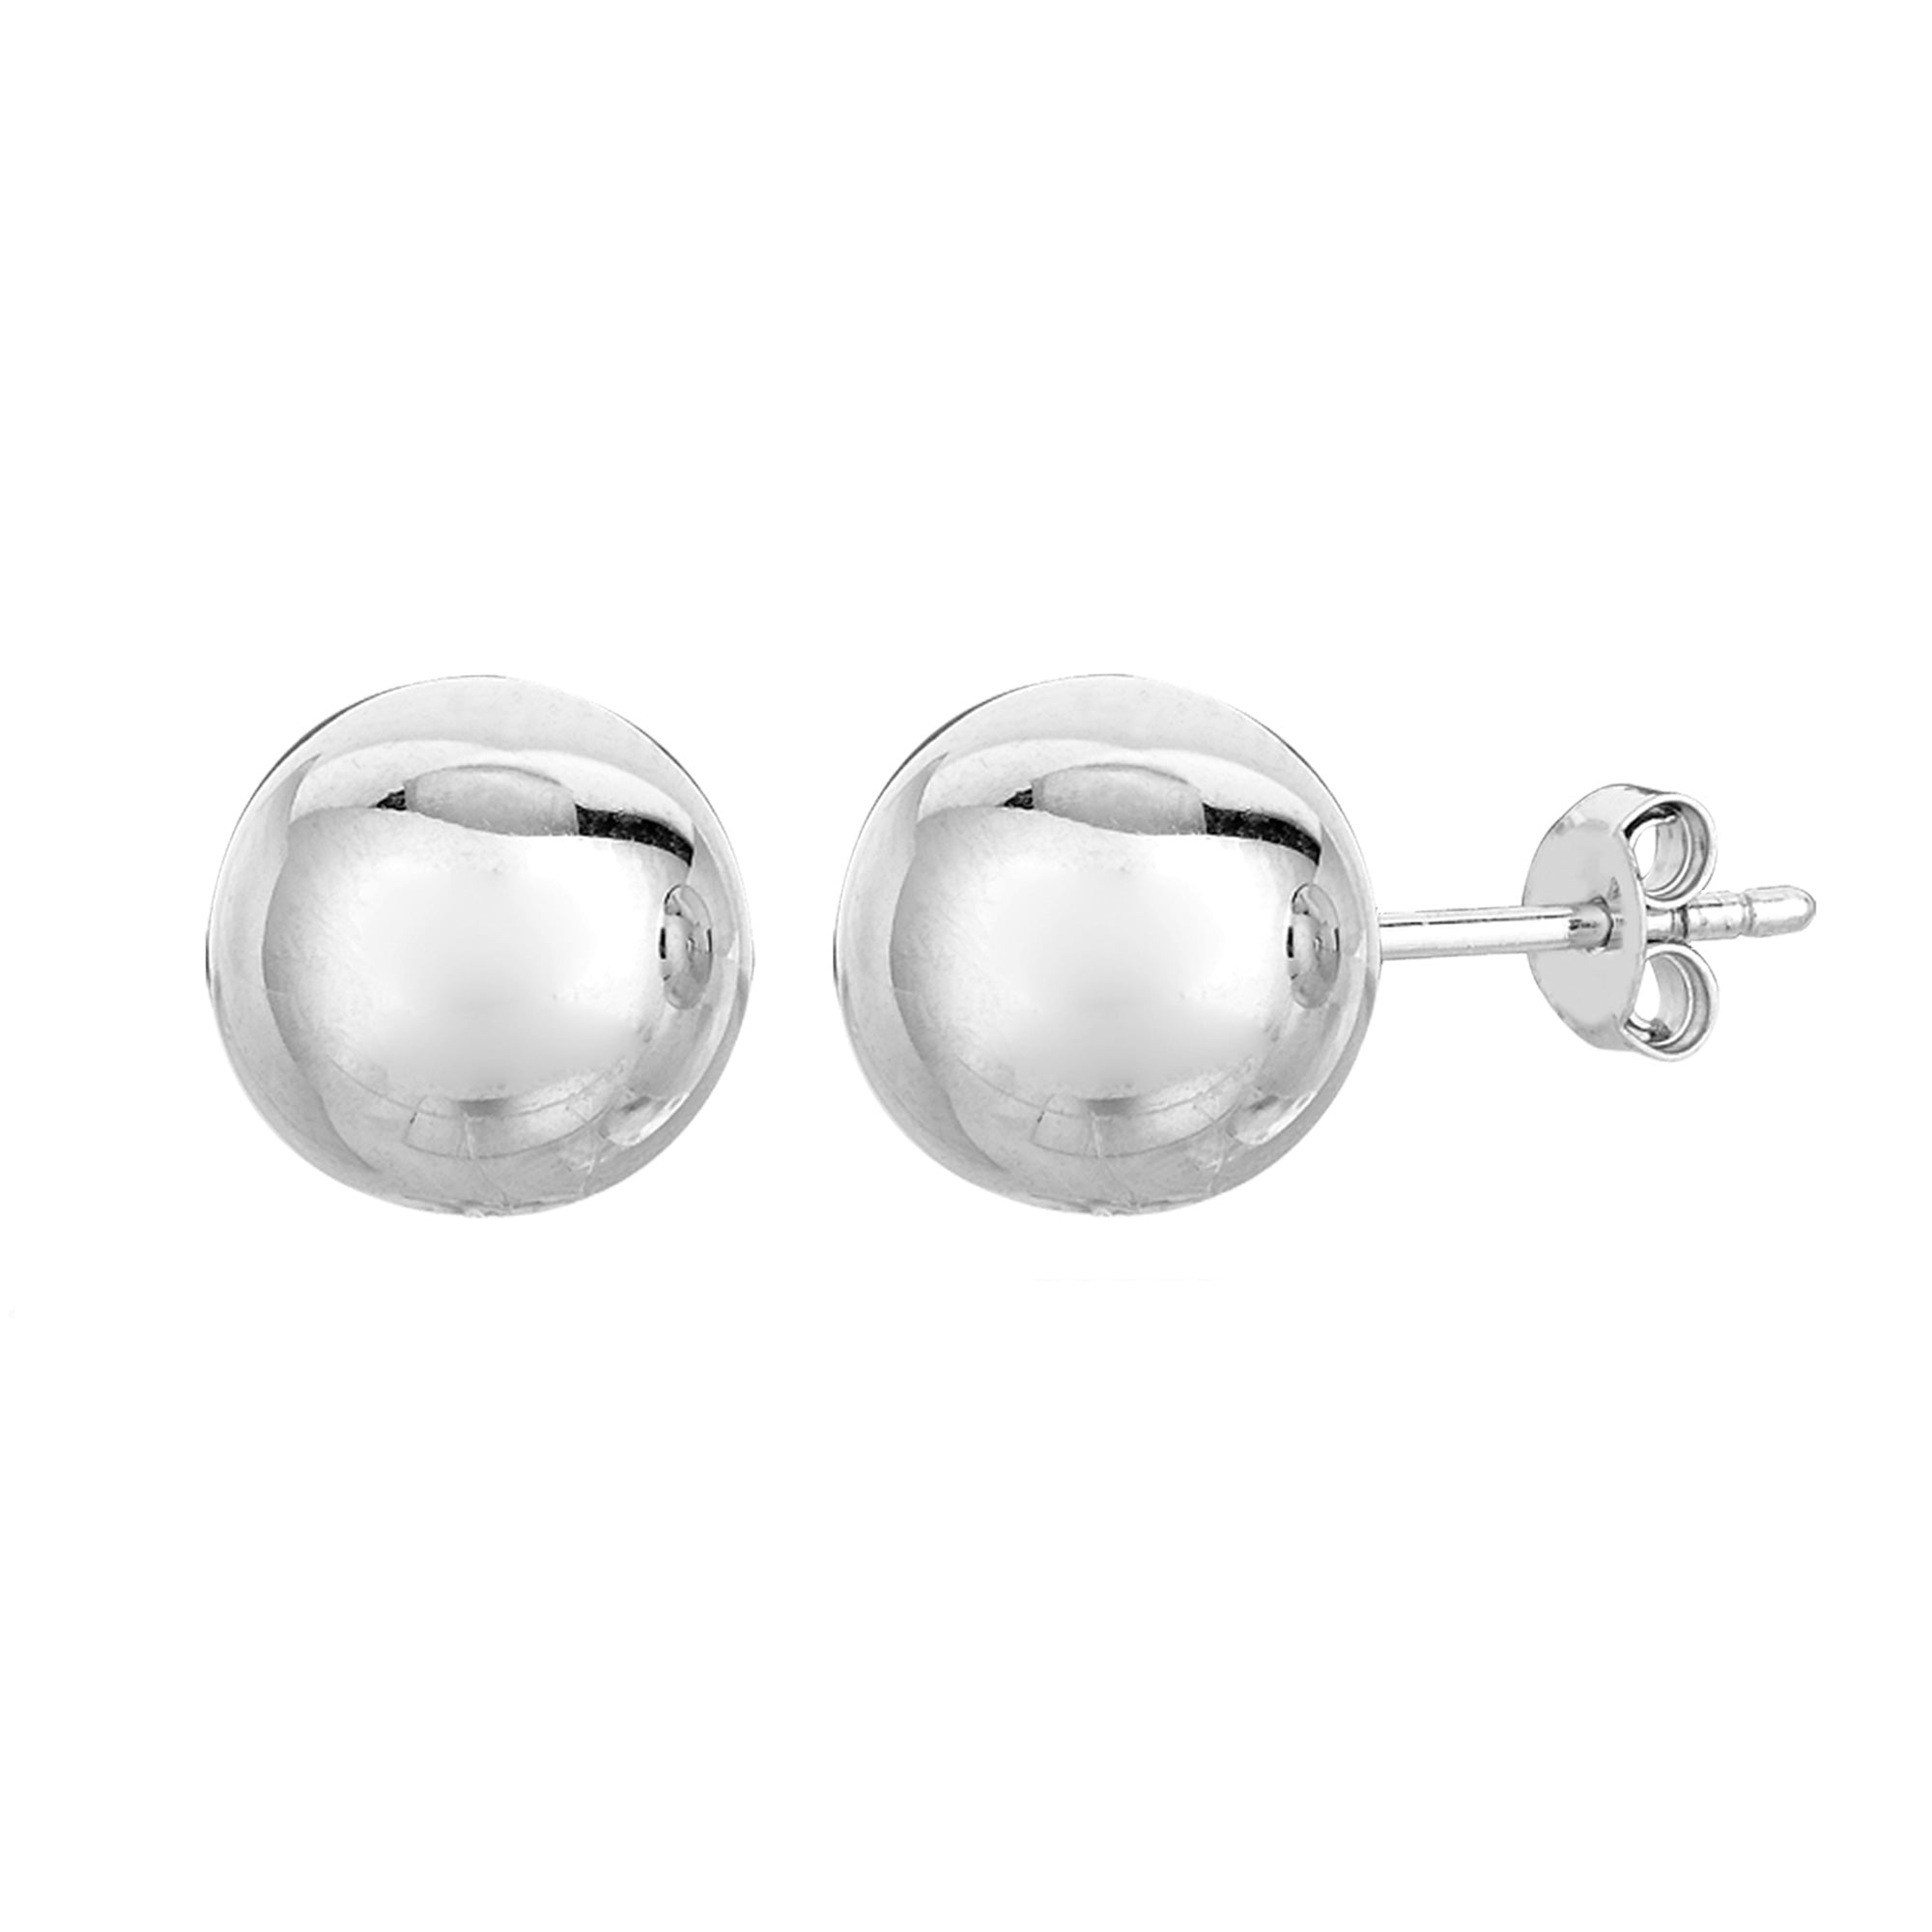 Pendientes de plata de ley con forma de bola, joyería fina de diseño para hombres y mujeres.